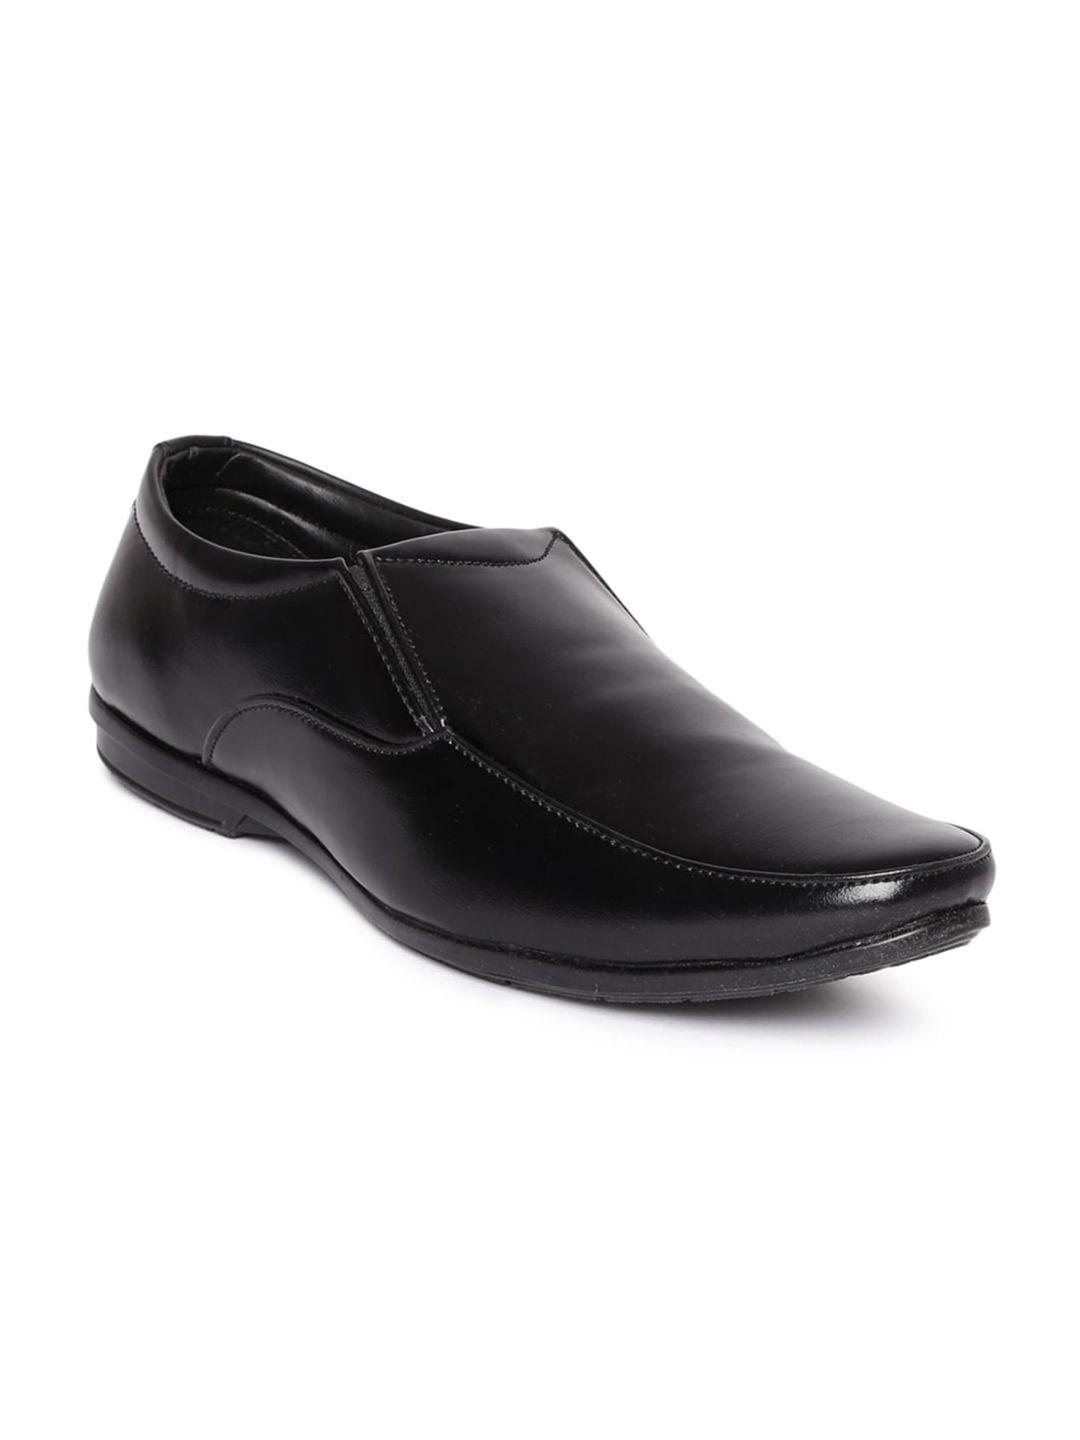 paragon-men-black-solid-formal-slip-on-shoes